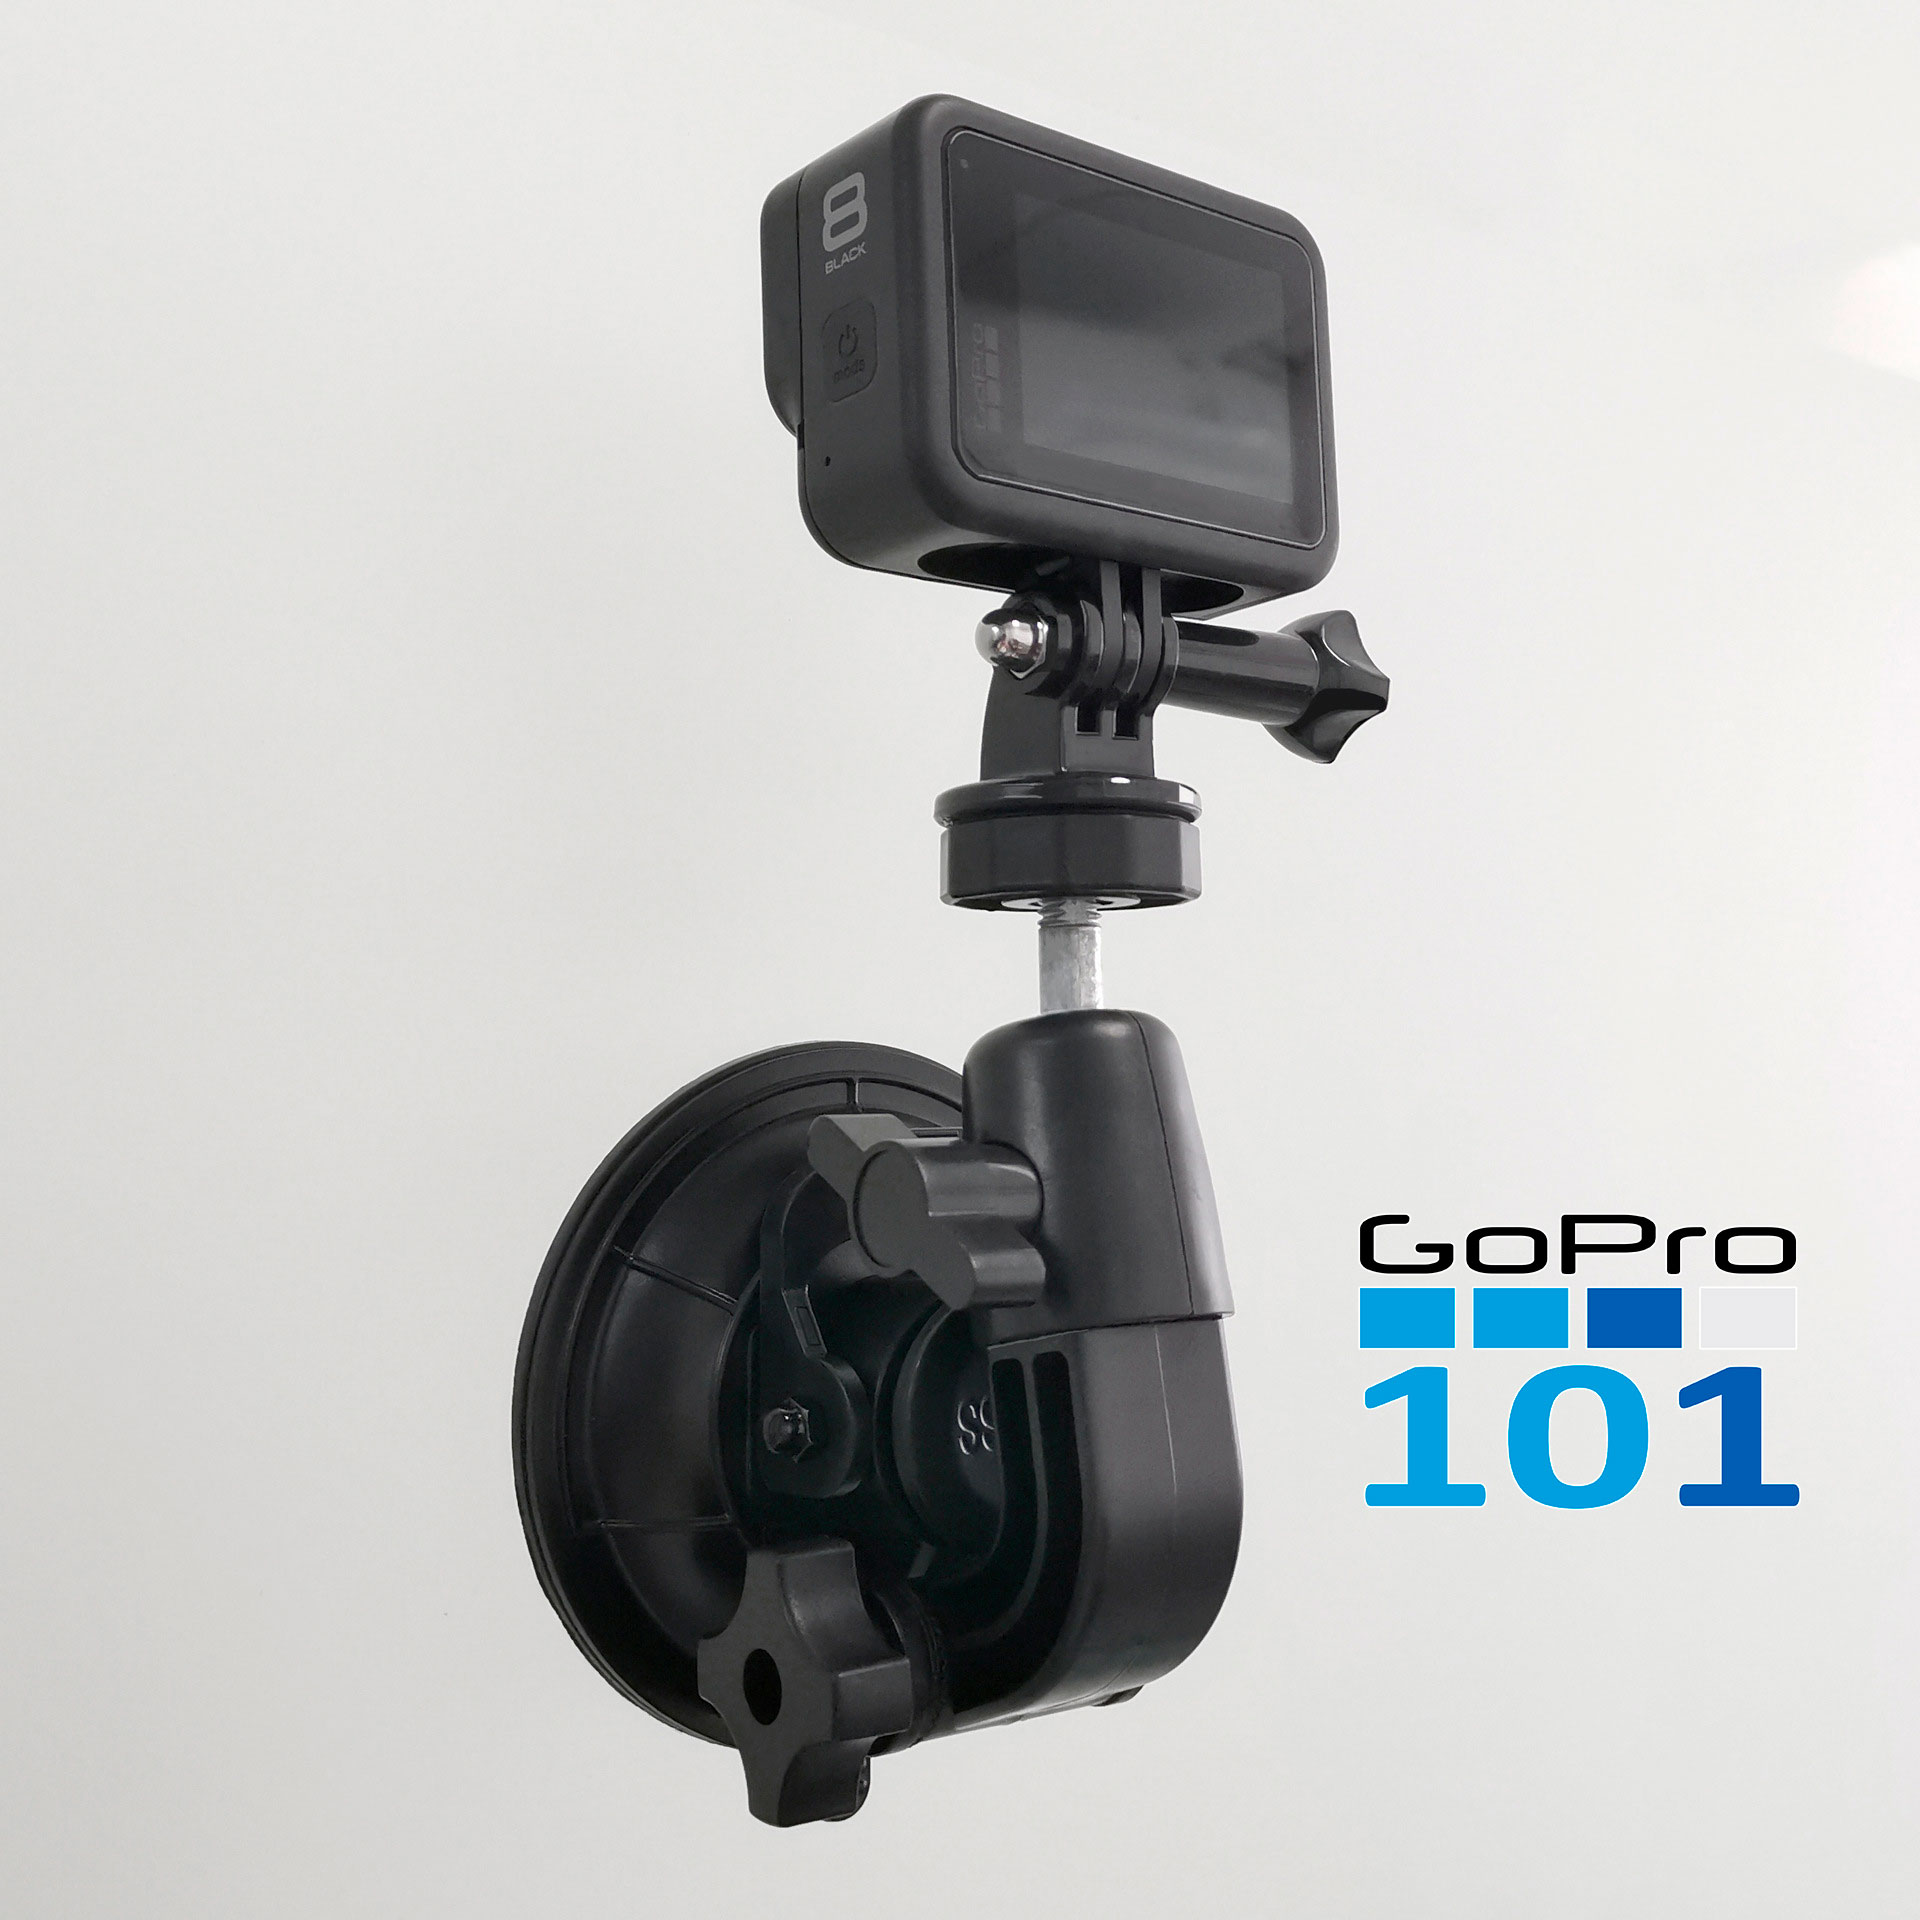 Đế Hít Kính Size Đại cho GoPro, Action cam - Chân Đế Gắn Kính ô tô Hút Chân Không - Gopro101